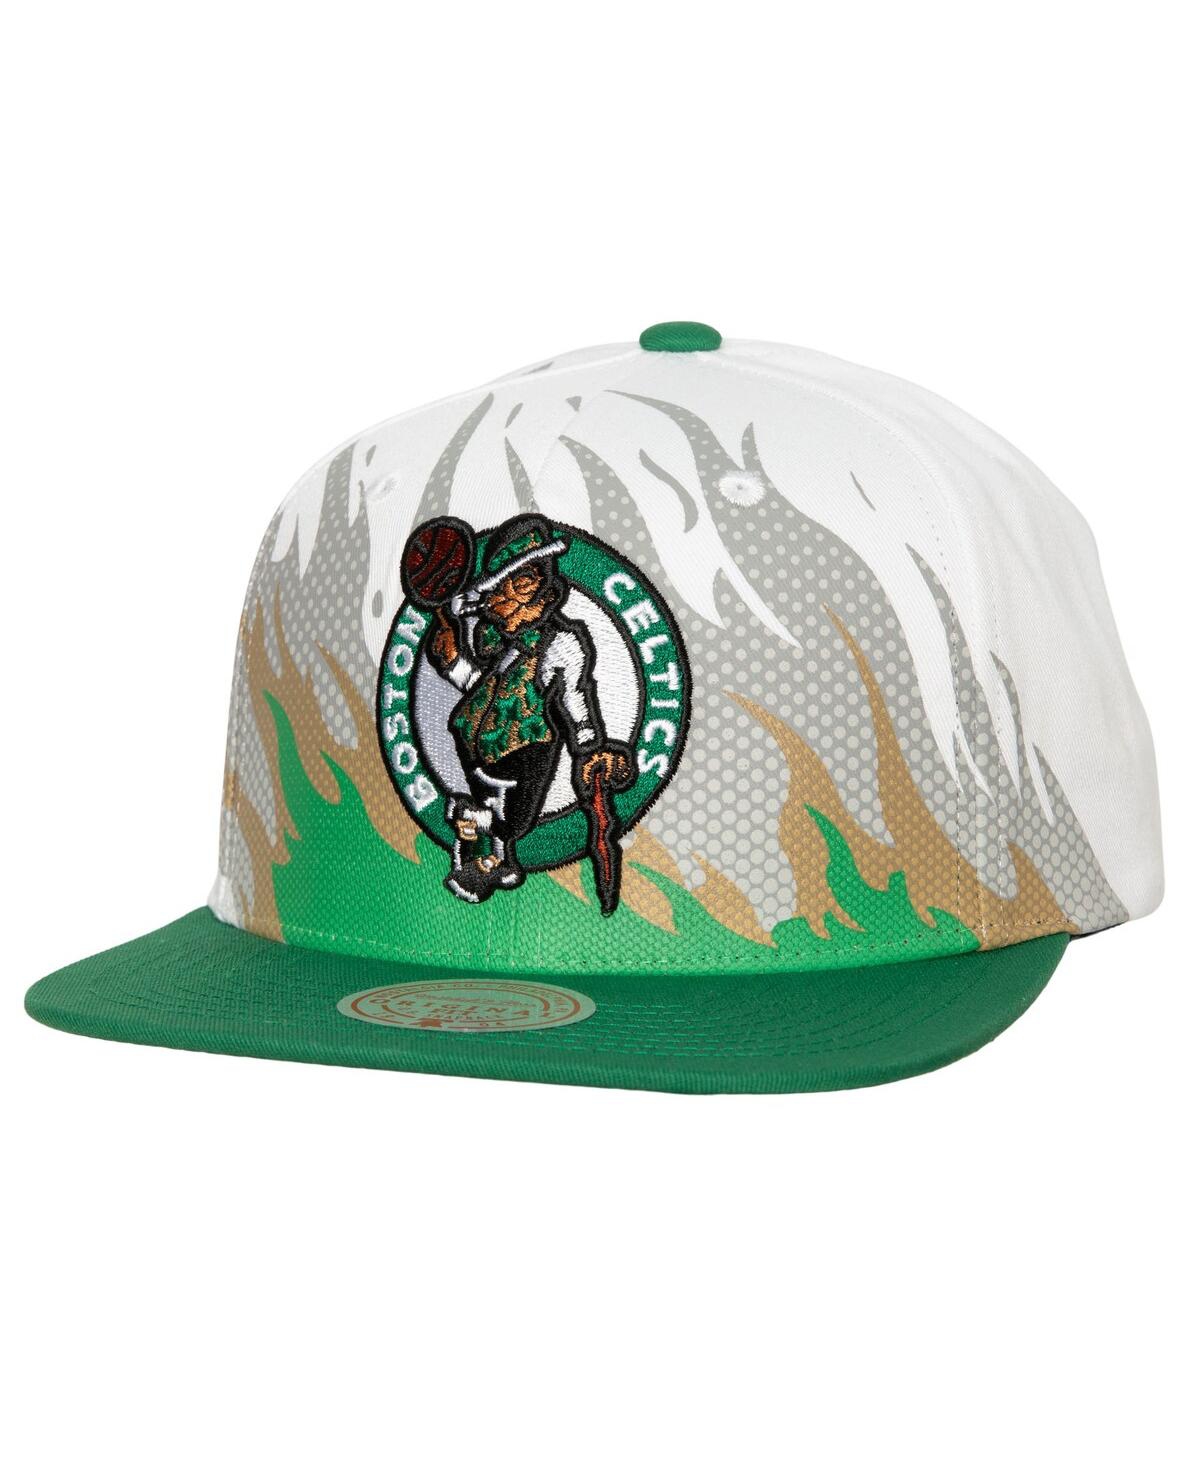 Mitchell & Ness Men's  White Boston Celtics Hot Fire Snapback Hat